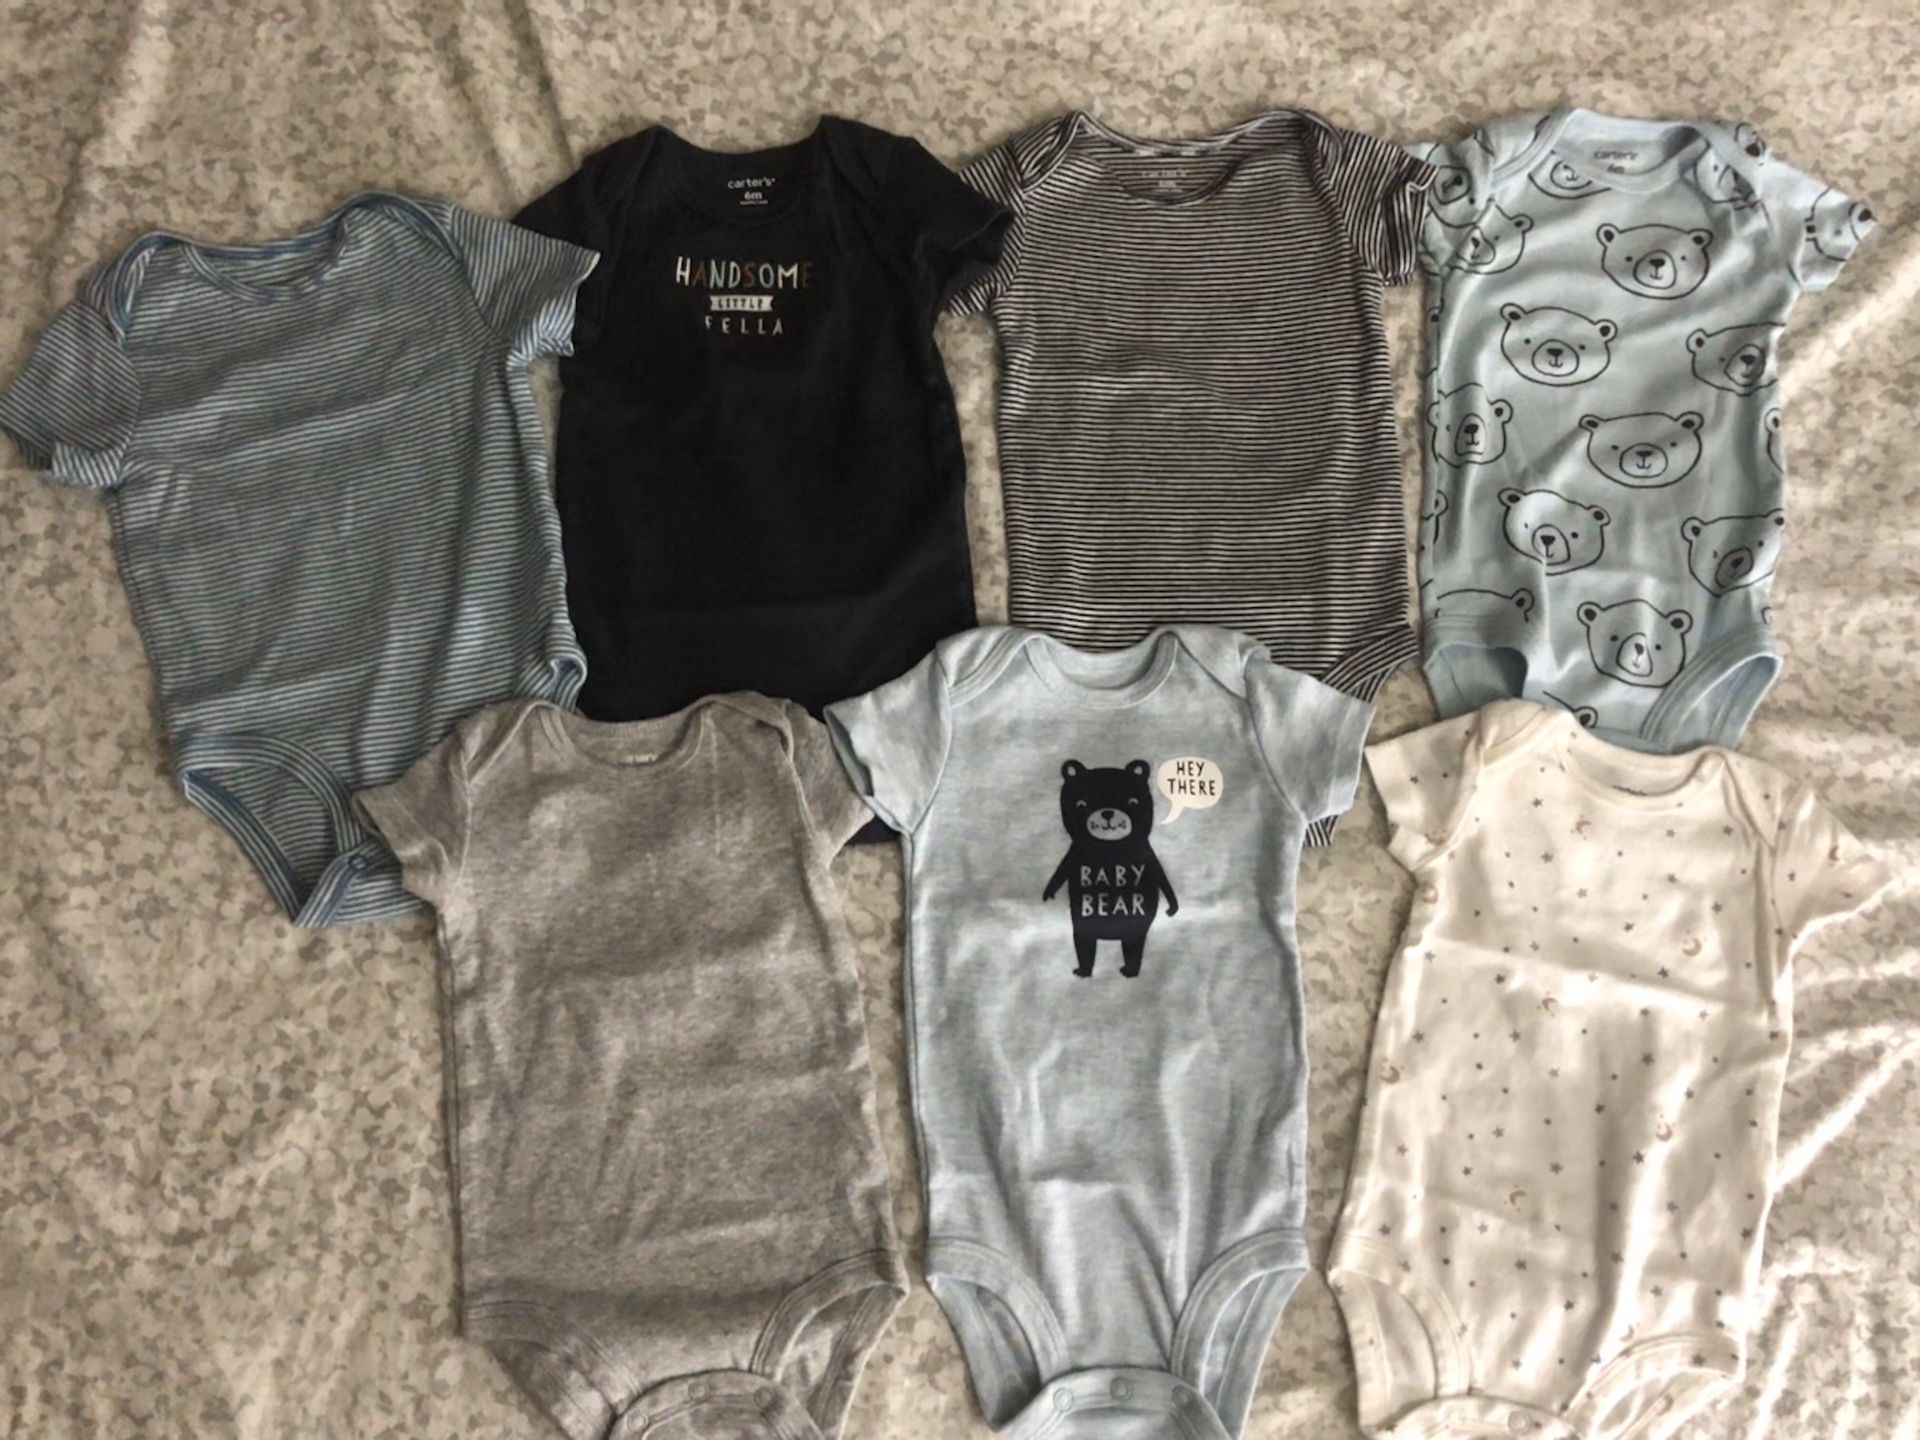 6 & 6-9 month boy clothes